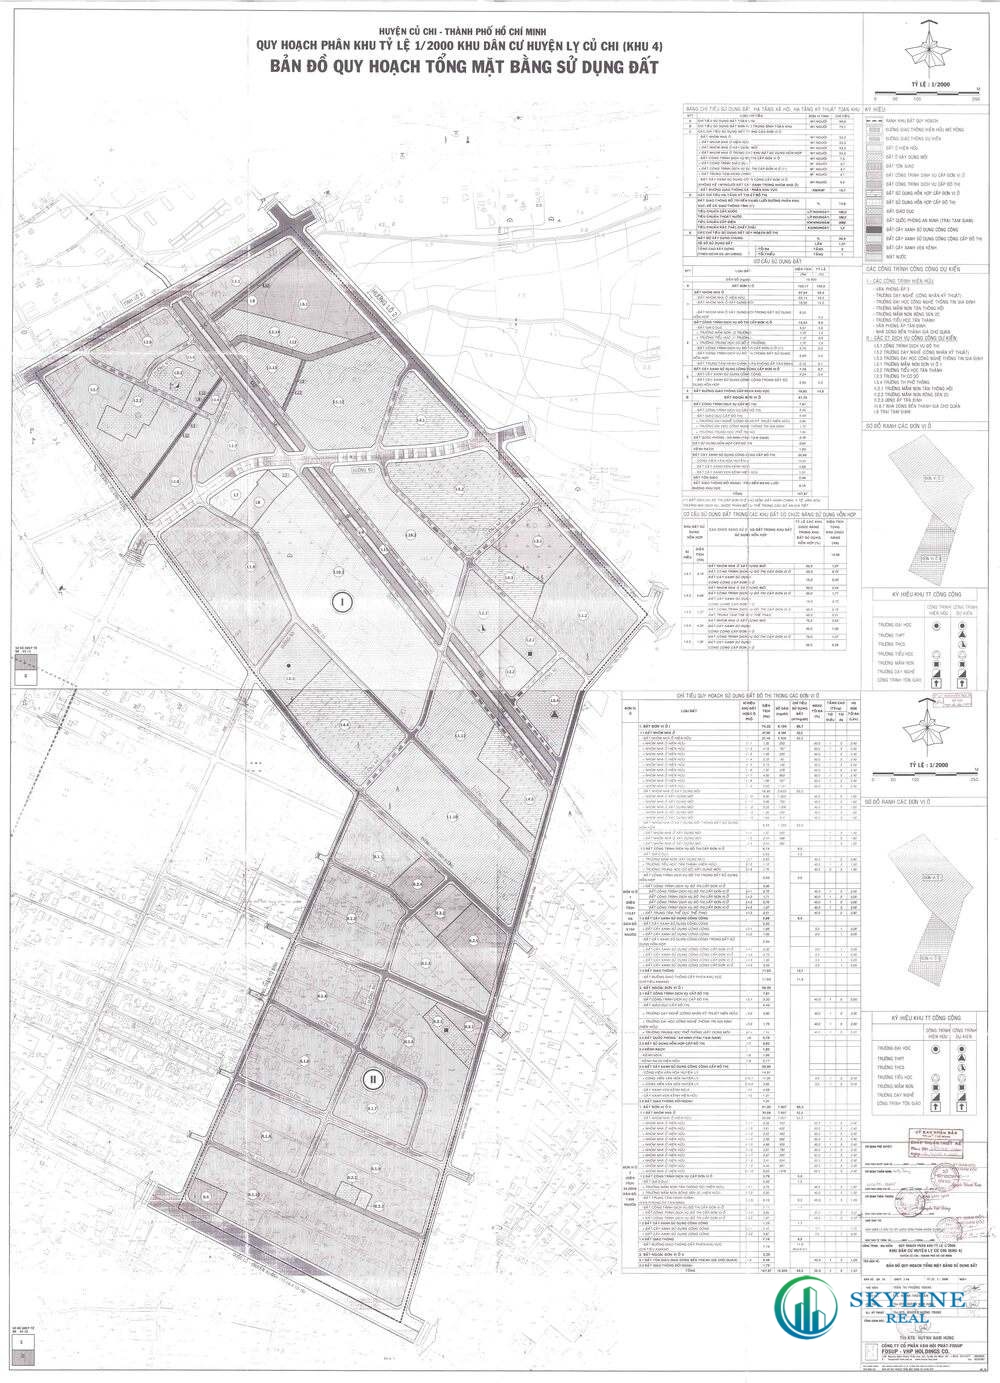 Bản đồ quy hoạch 1/2000 Khu dân cư huyện lỵ Củ Chi (khu 4), Huyện Củ Chi